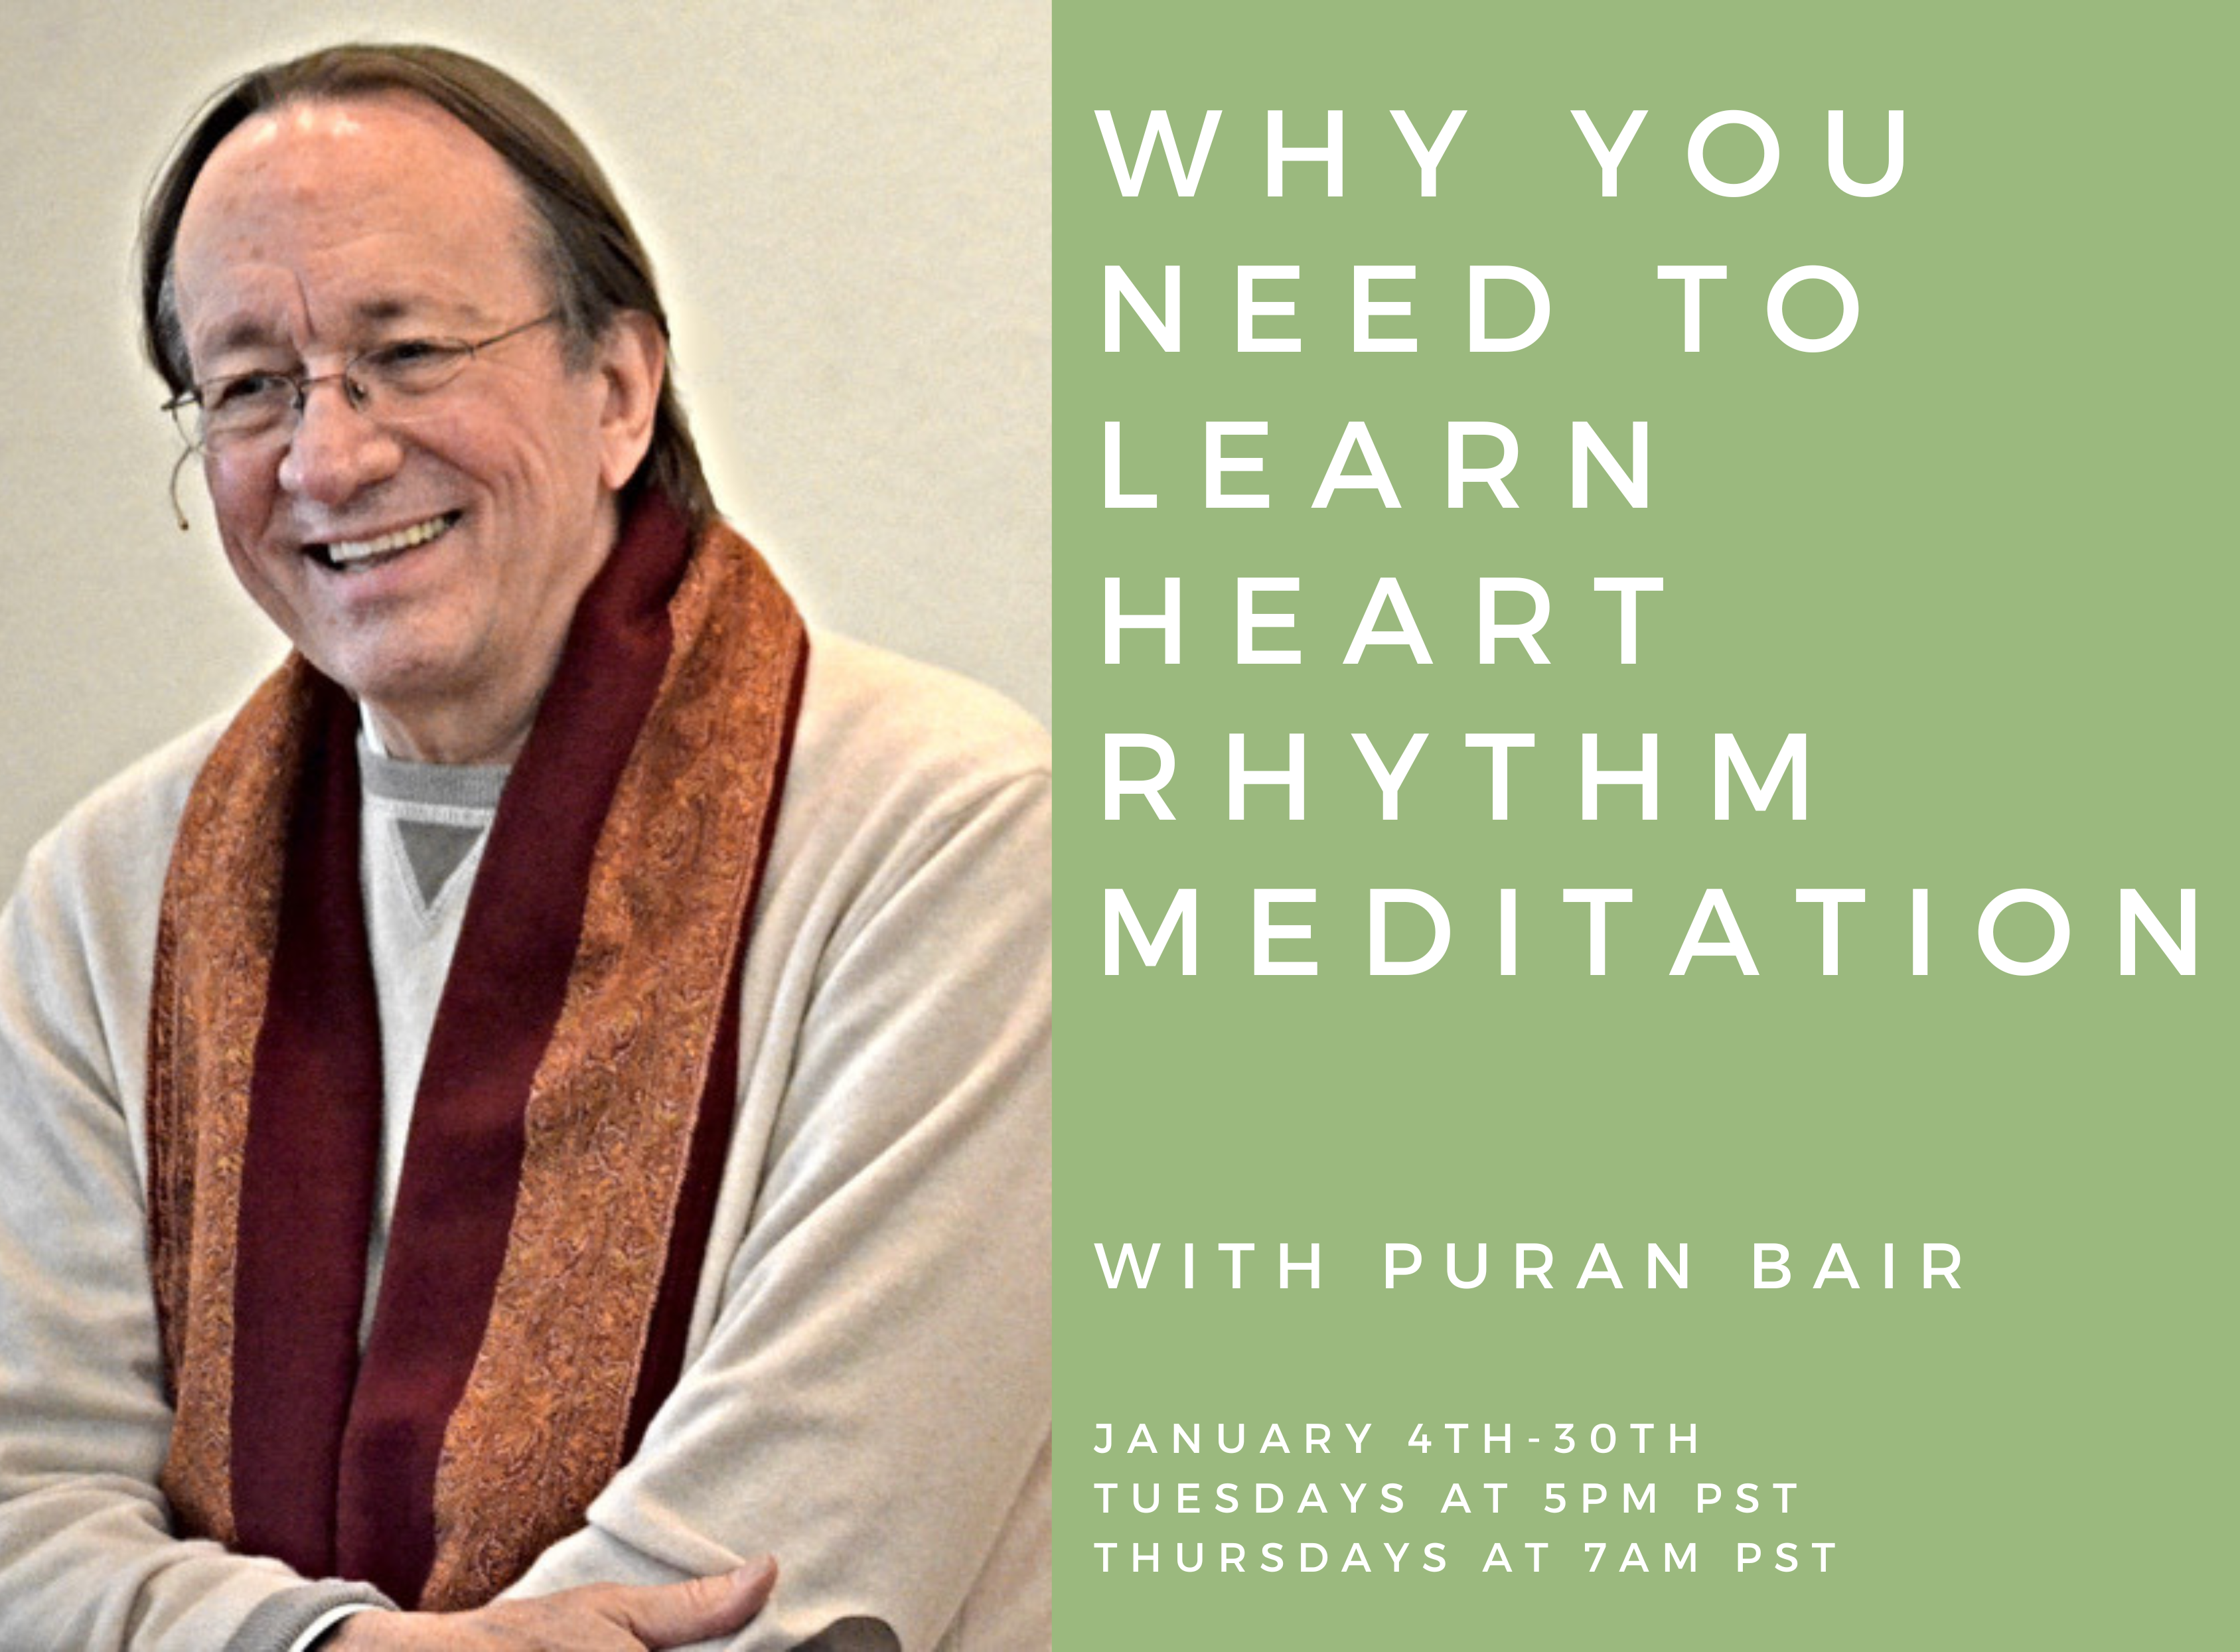 Why You Should Learn Heart Rhythm Meditation